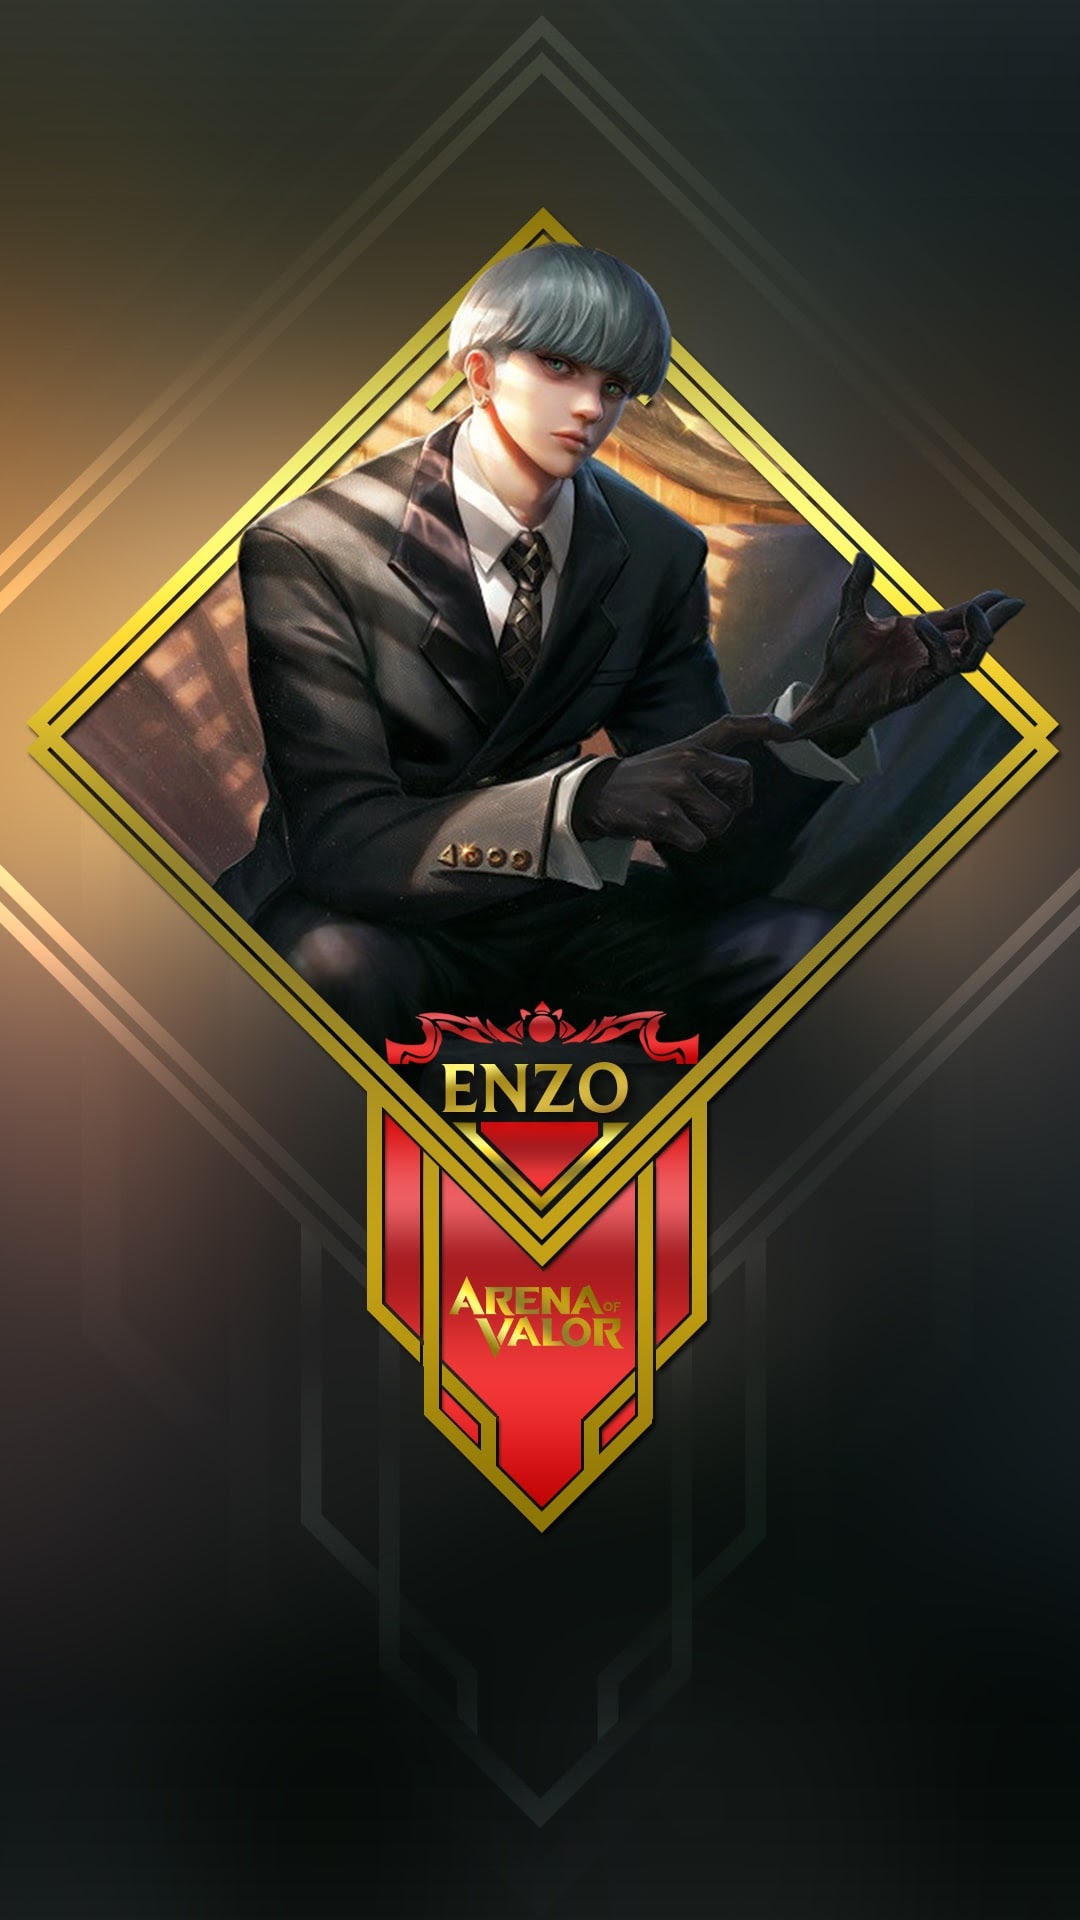 Tải hình nền Enzo Liên Quân Mobile: Bạn đang muốn tìm kiếm một hình nền Enzo ấn tượng và hợp phong cách? Tải ngay hình nền Enzo Liên Quân Mobile và thể hiện đẳng cấp của mình trên điện thoại của bạn!